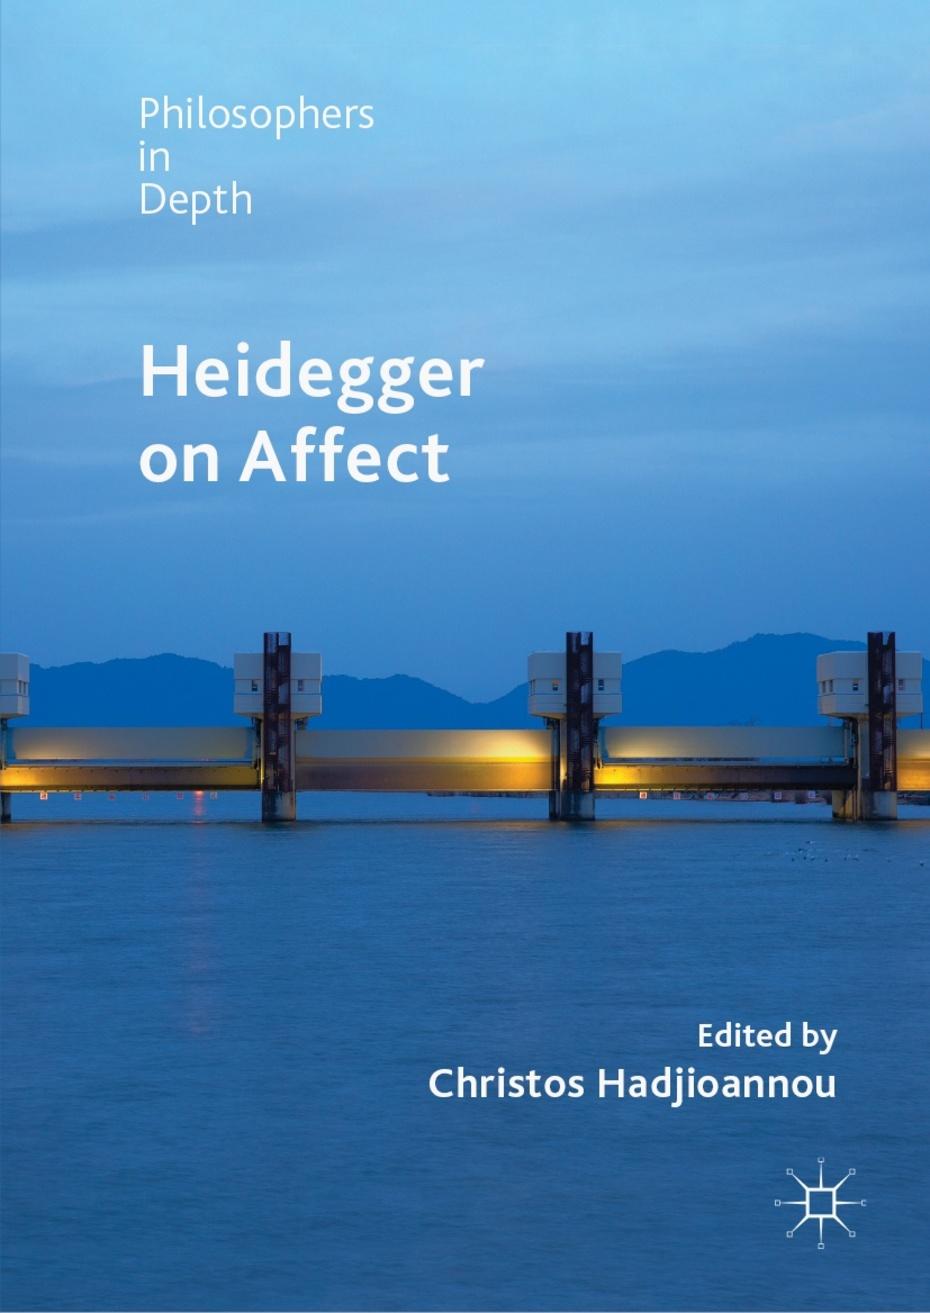 Heidegger on Affect (Cover)